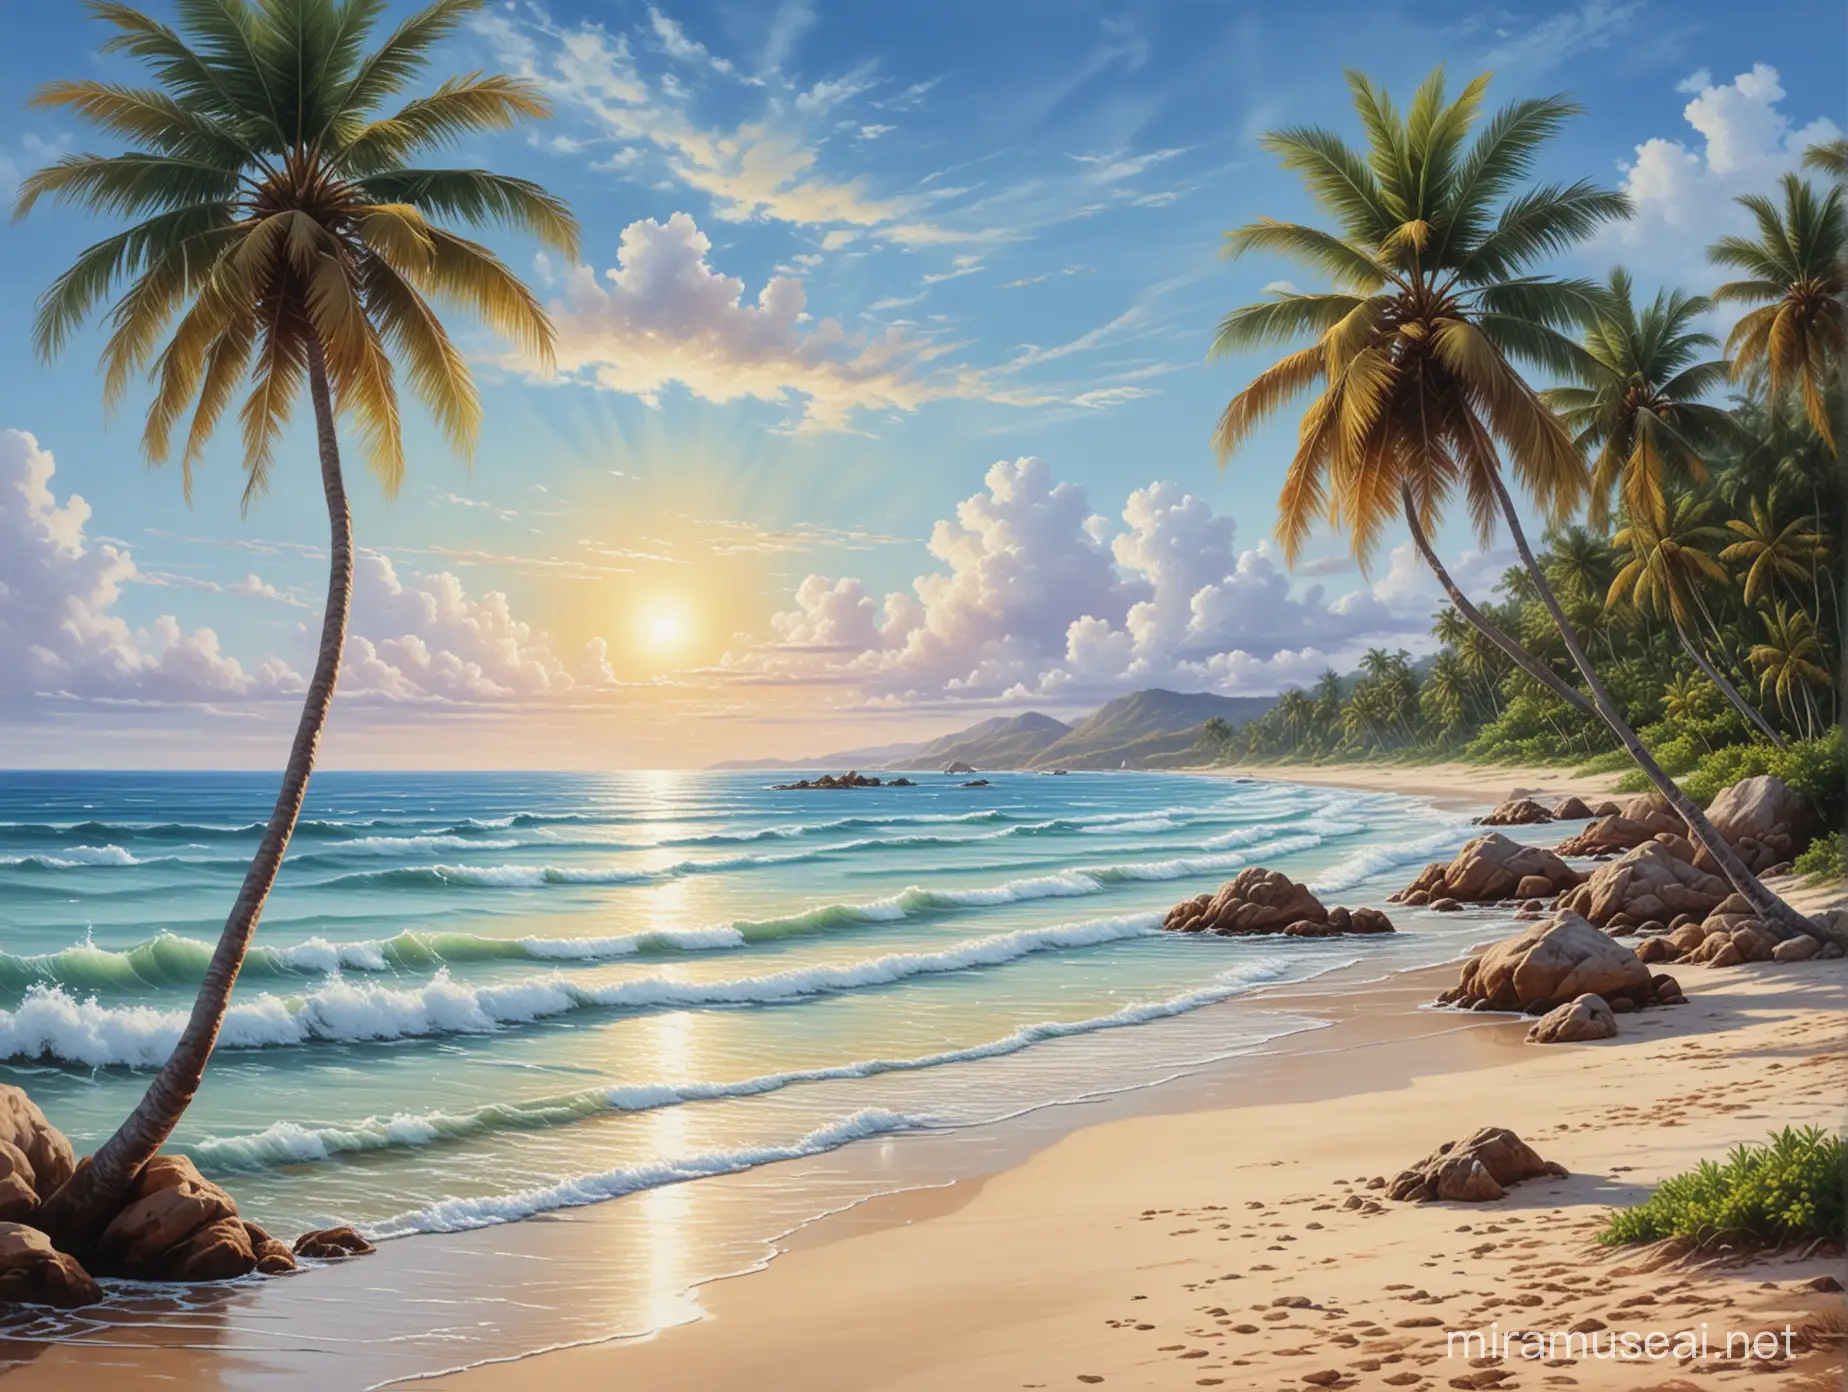 Великолепный пейзаж, морское побережье, спокойное море, песчаный пляж,лагуна,редкие, кокосовые пальмы, голубое небо, 
 профессиональный, реалистичный, красочный рисунок, картина маслом, живопись, шедевр.